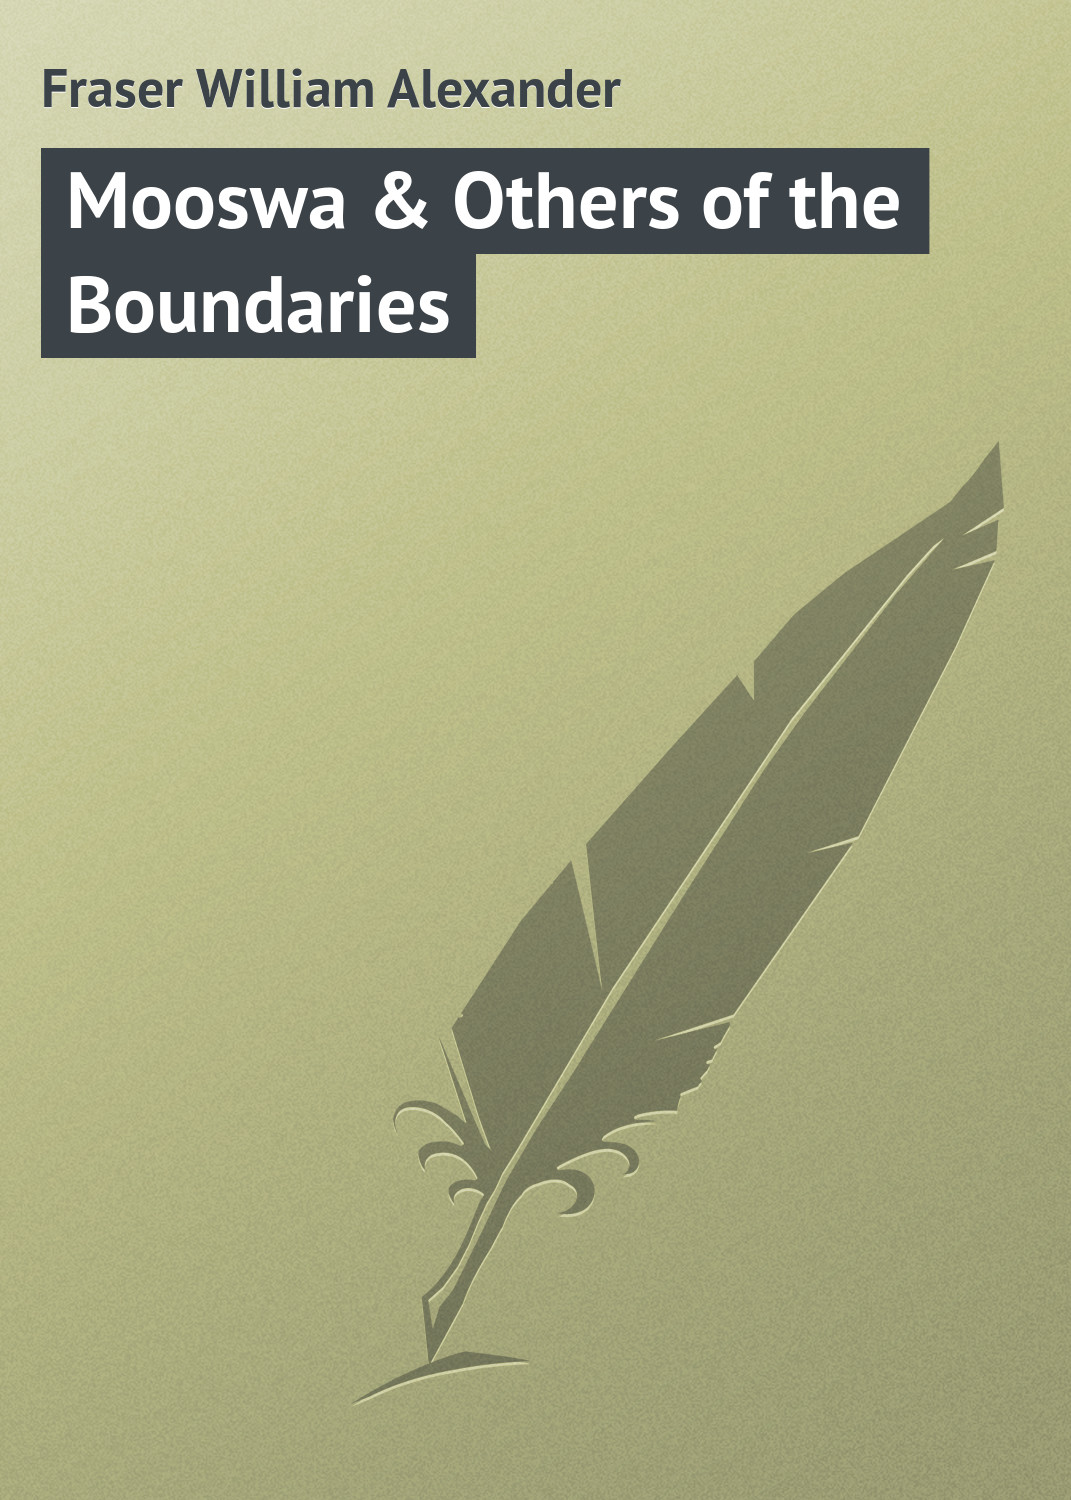 Книга Mooswa & Others of the Boundaries из серии , созданная William Fraser, может относится к жанру Природа и животные, Зарубежная классика. Стоимость книги Mooswa & Others of the Boundaries  с идентификатором 23149739 составляет 5.99 руб.